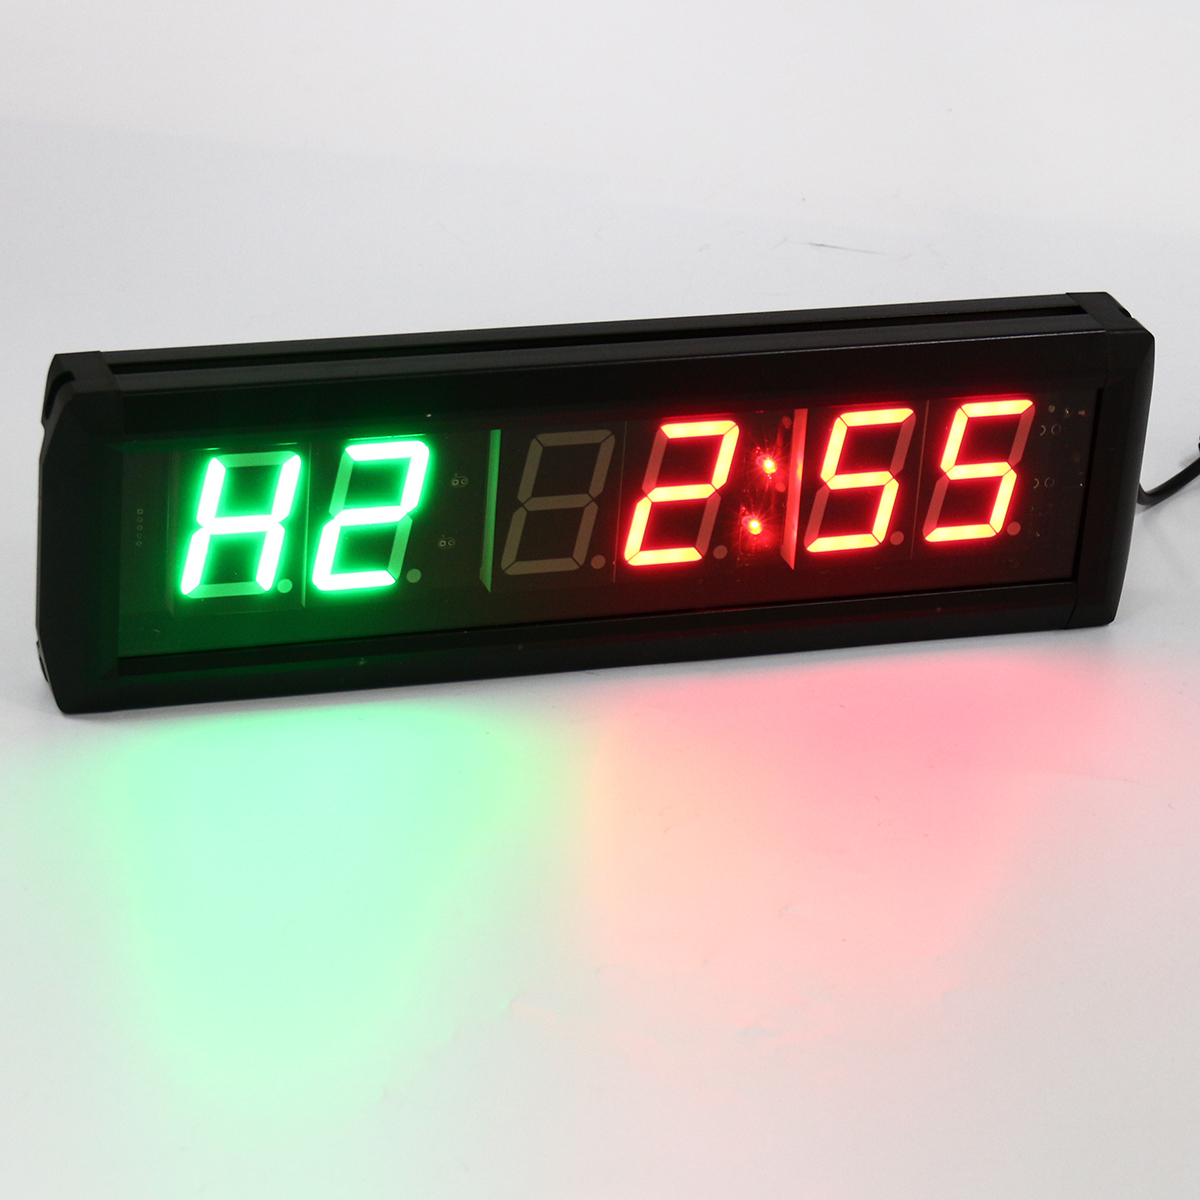 gym timer wall clock